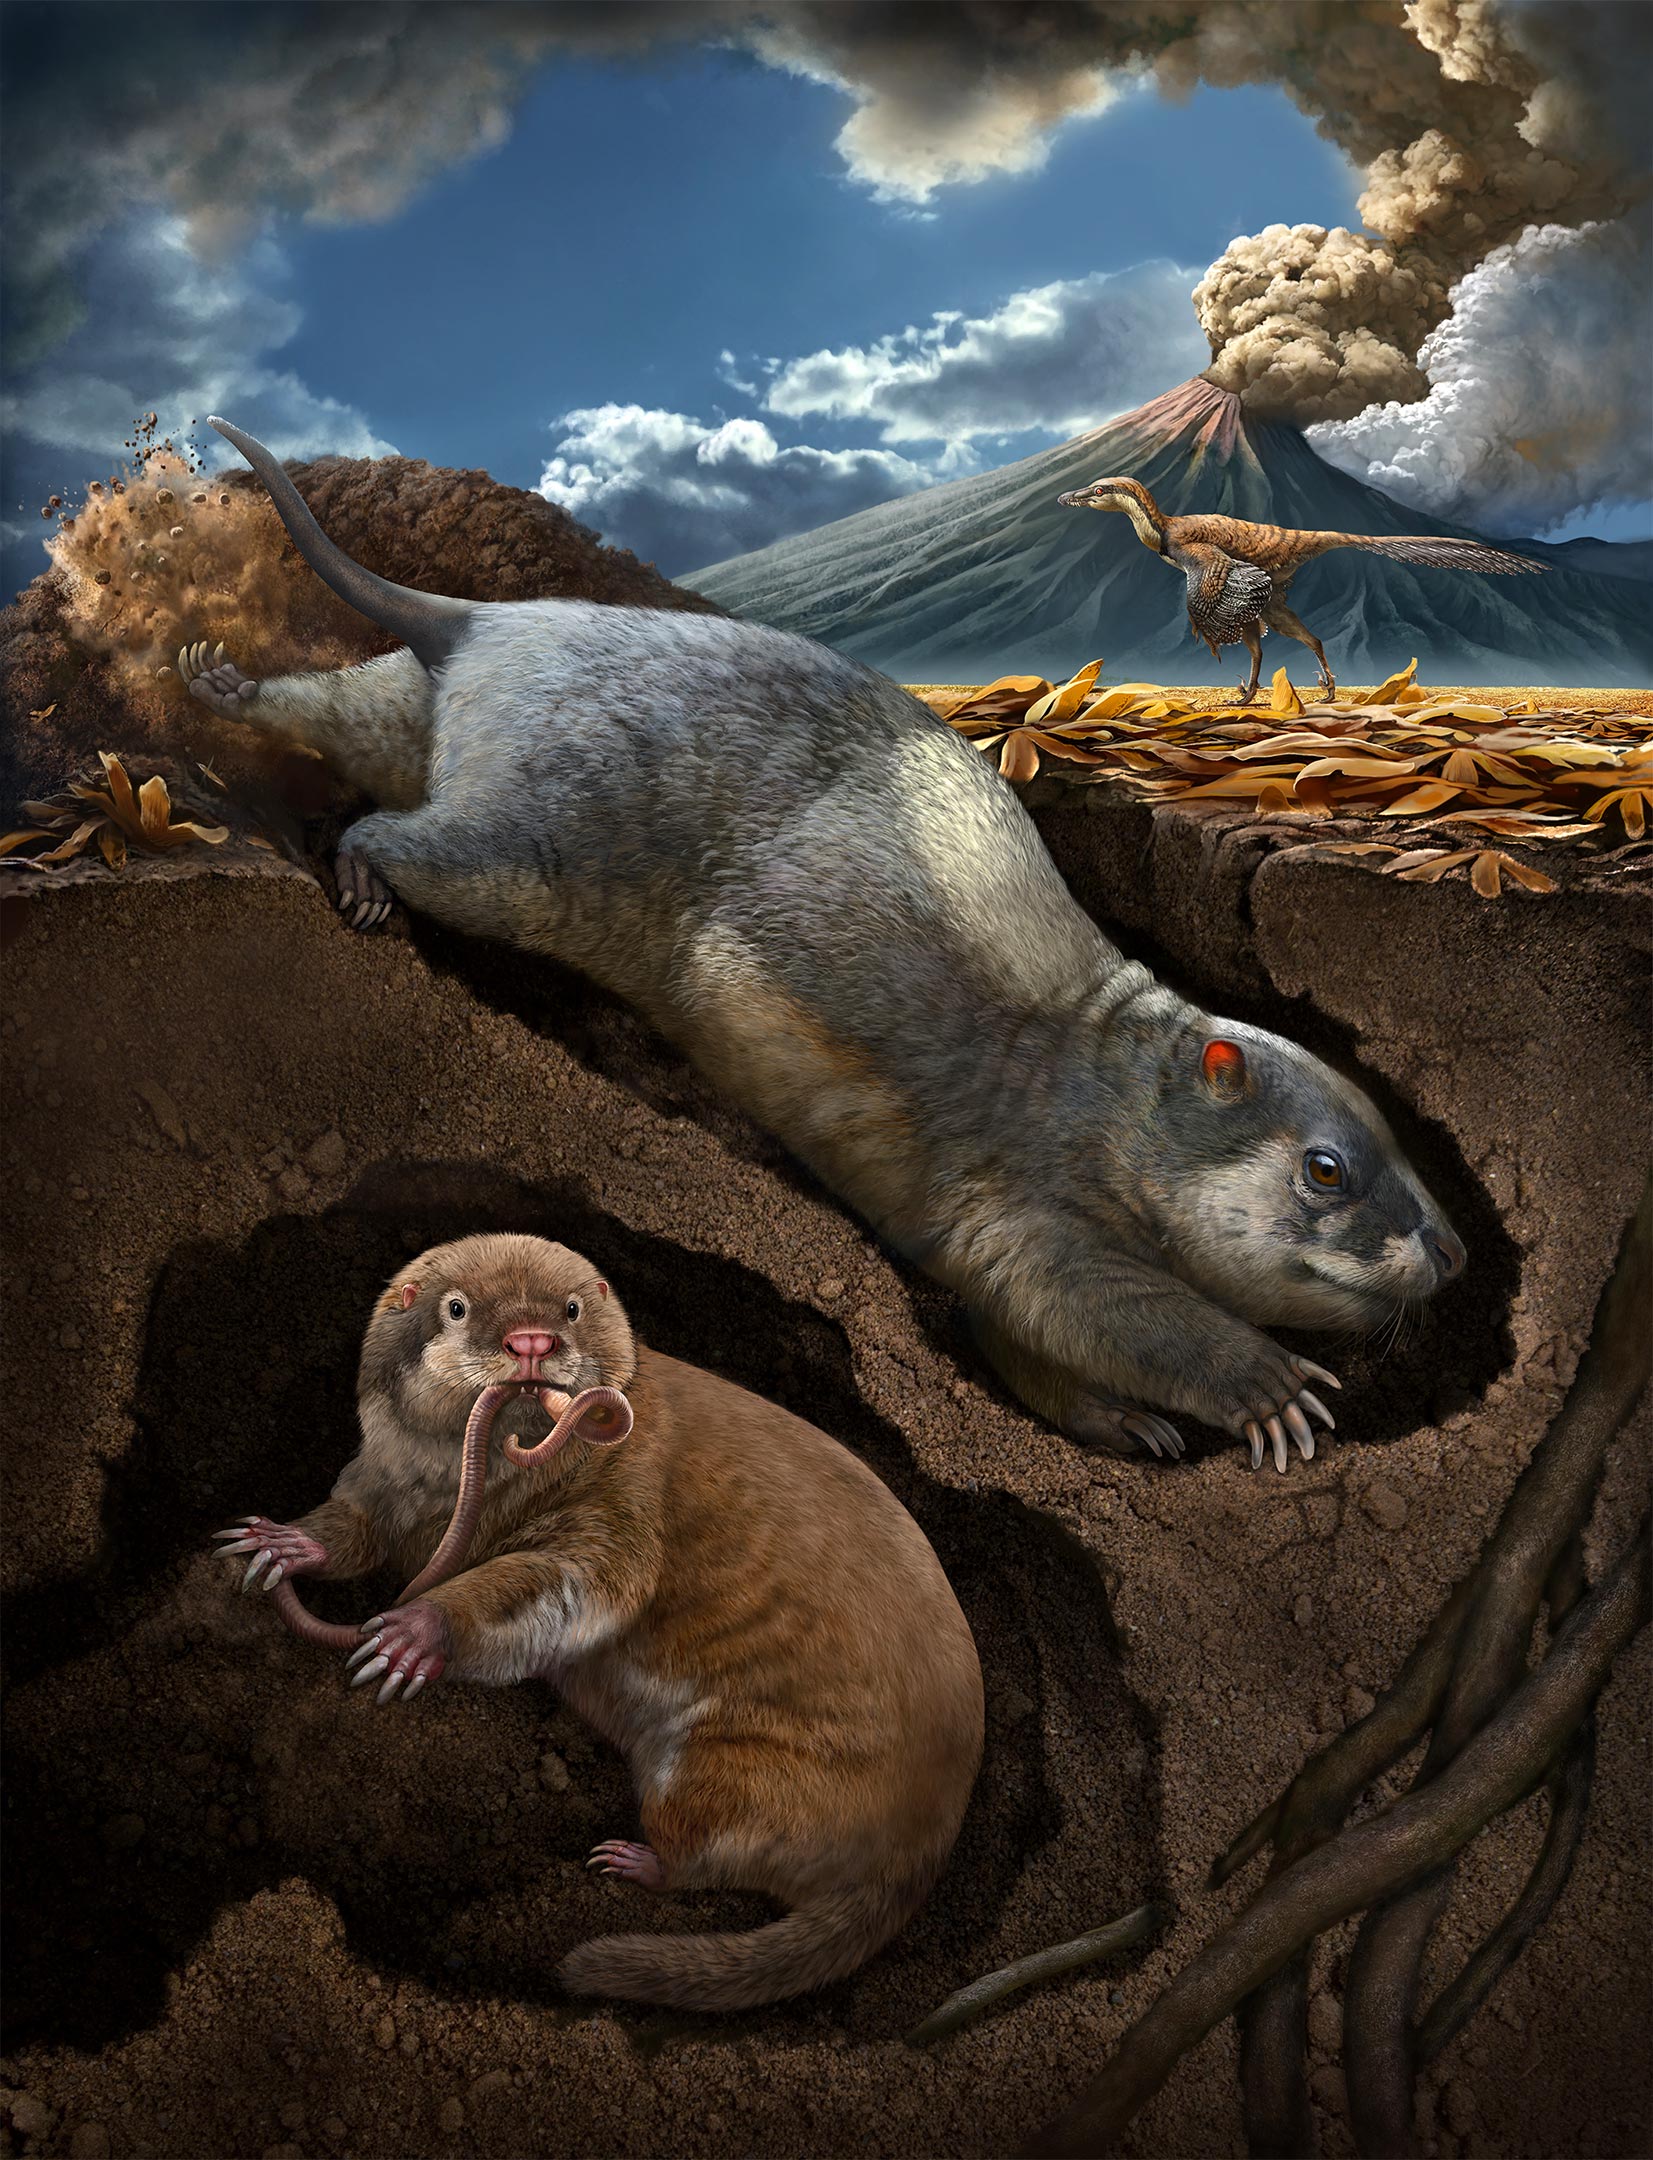 1.2亿年前动物独立进化出“掘土穴居”的特征